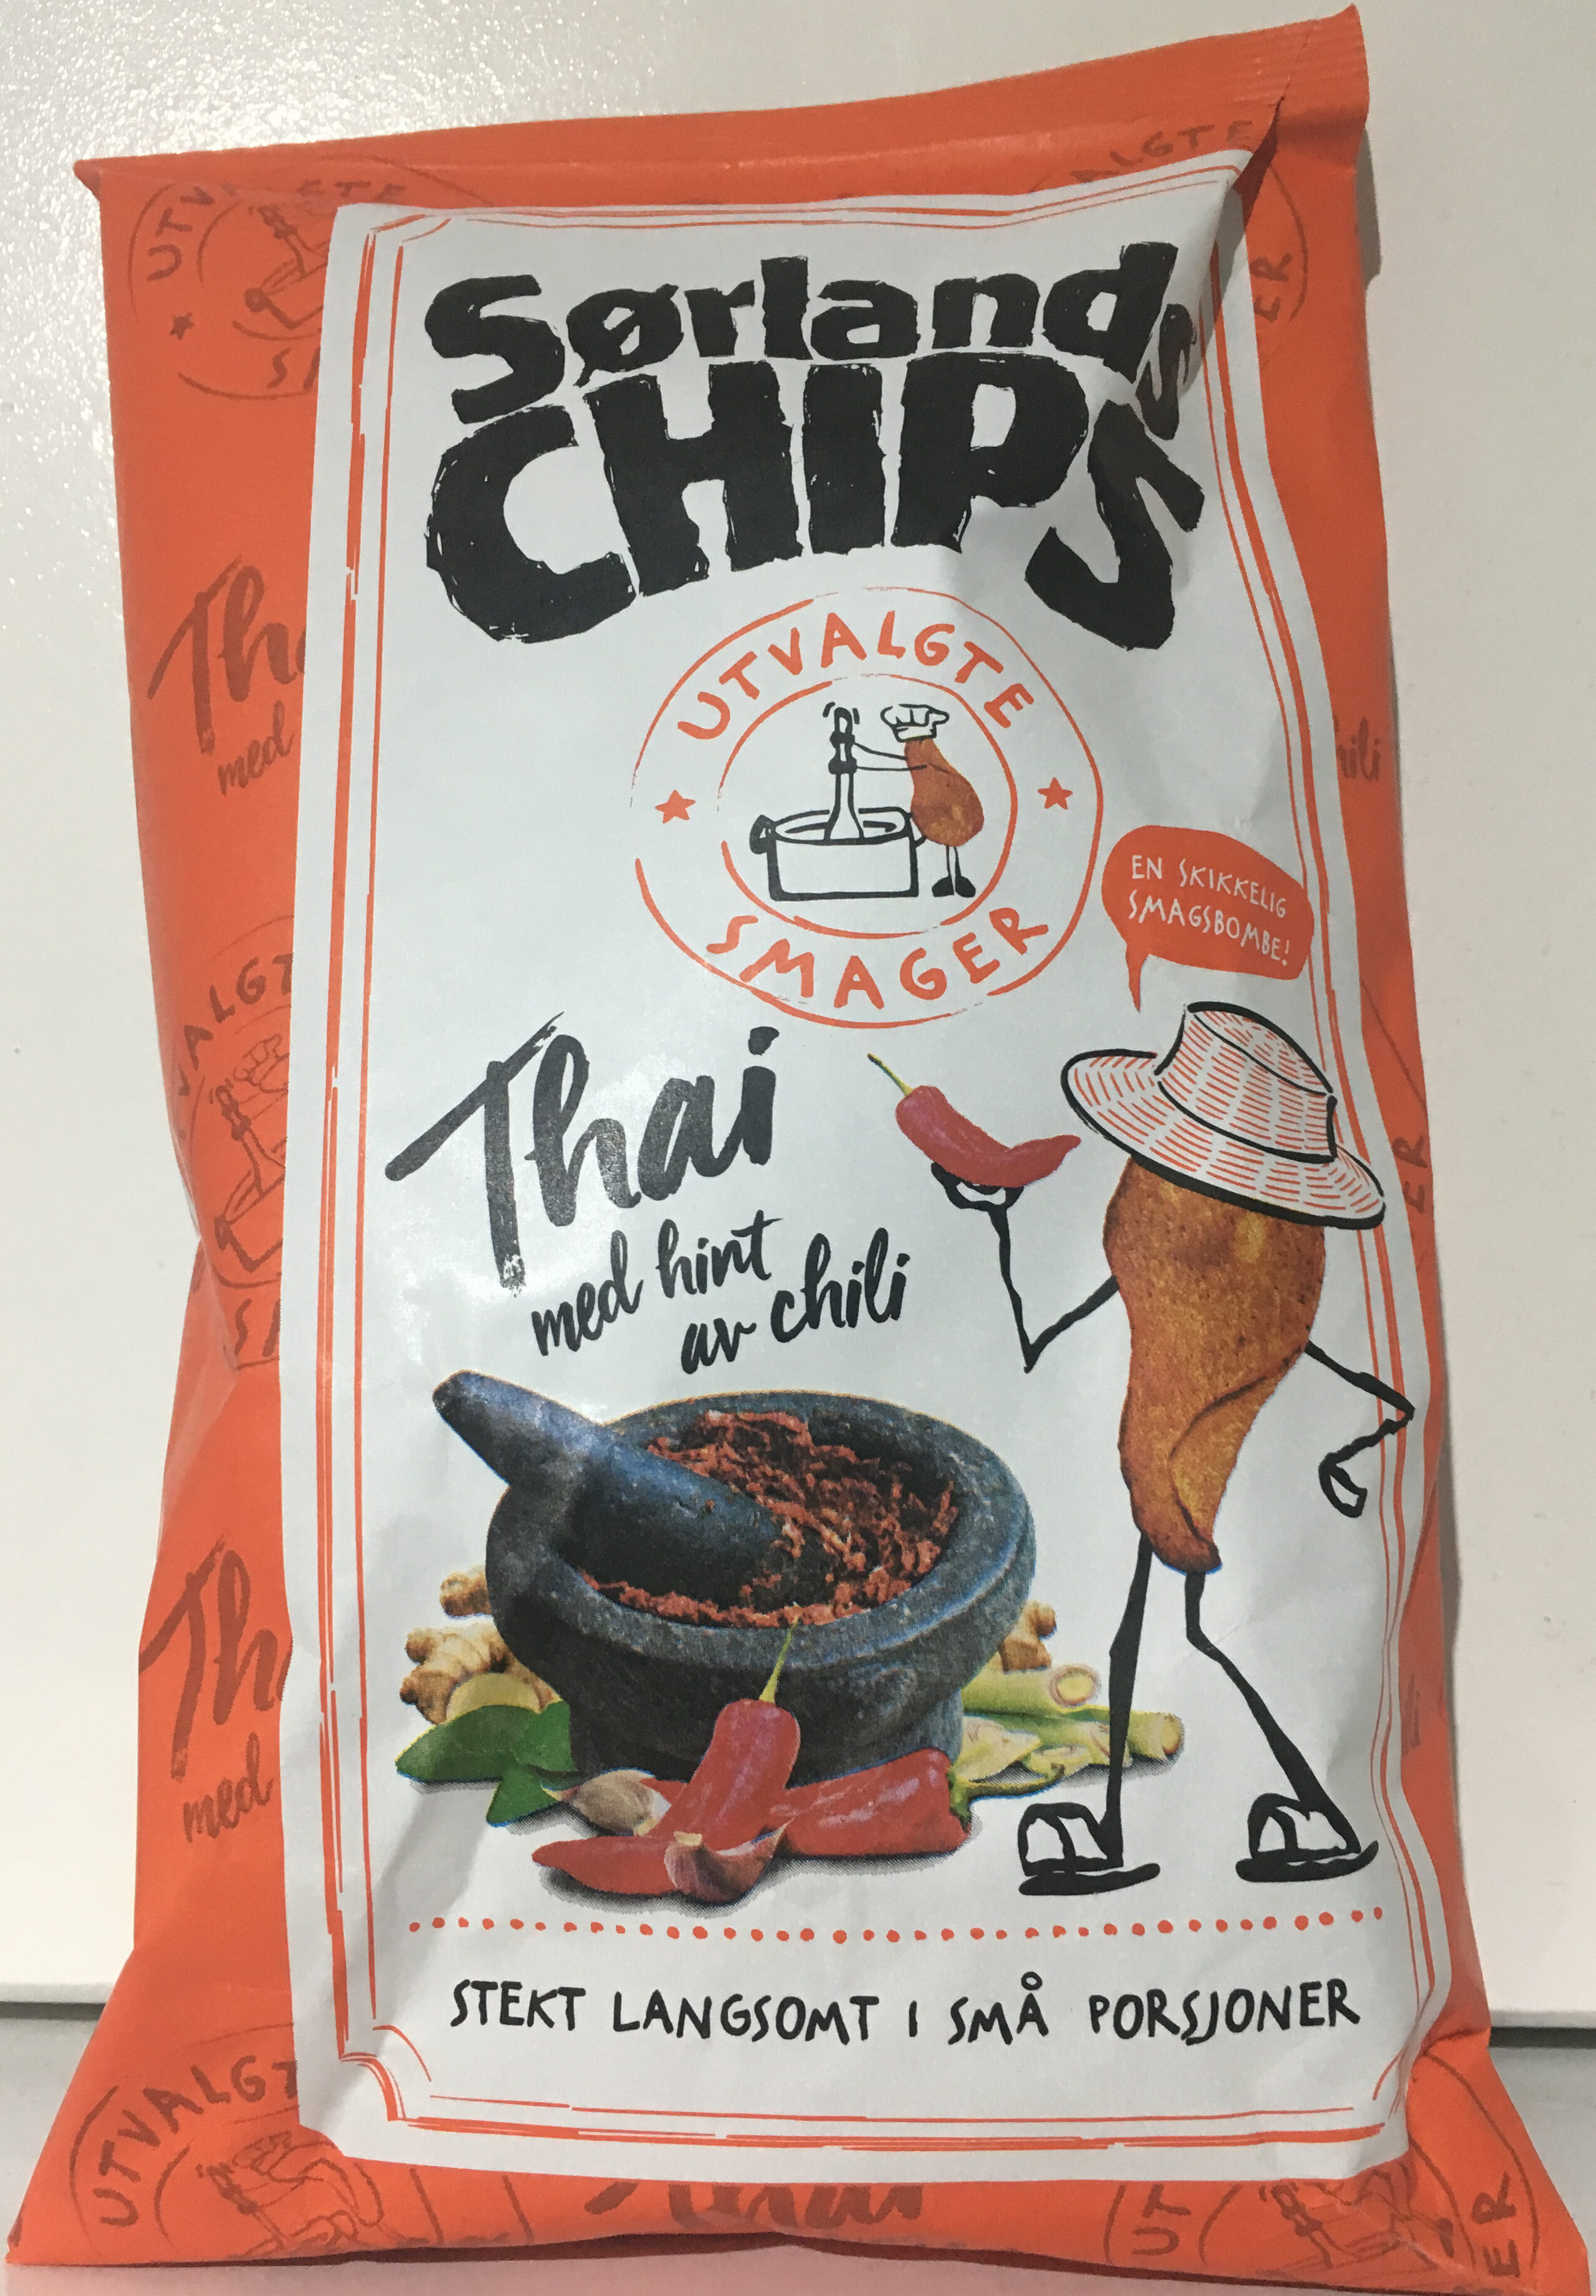 Sørlands Chips Thai med hint av chili - Produit - nb